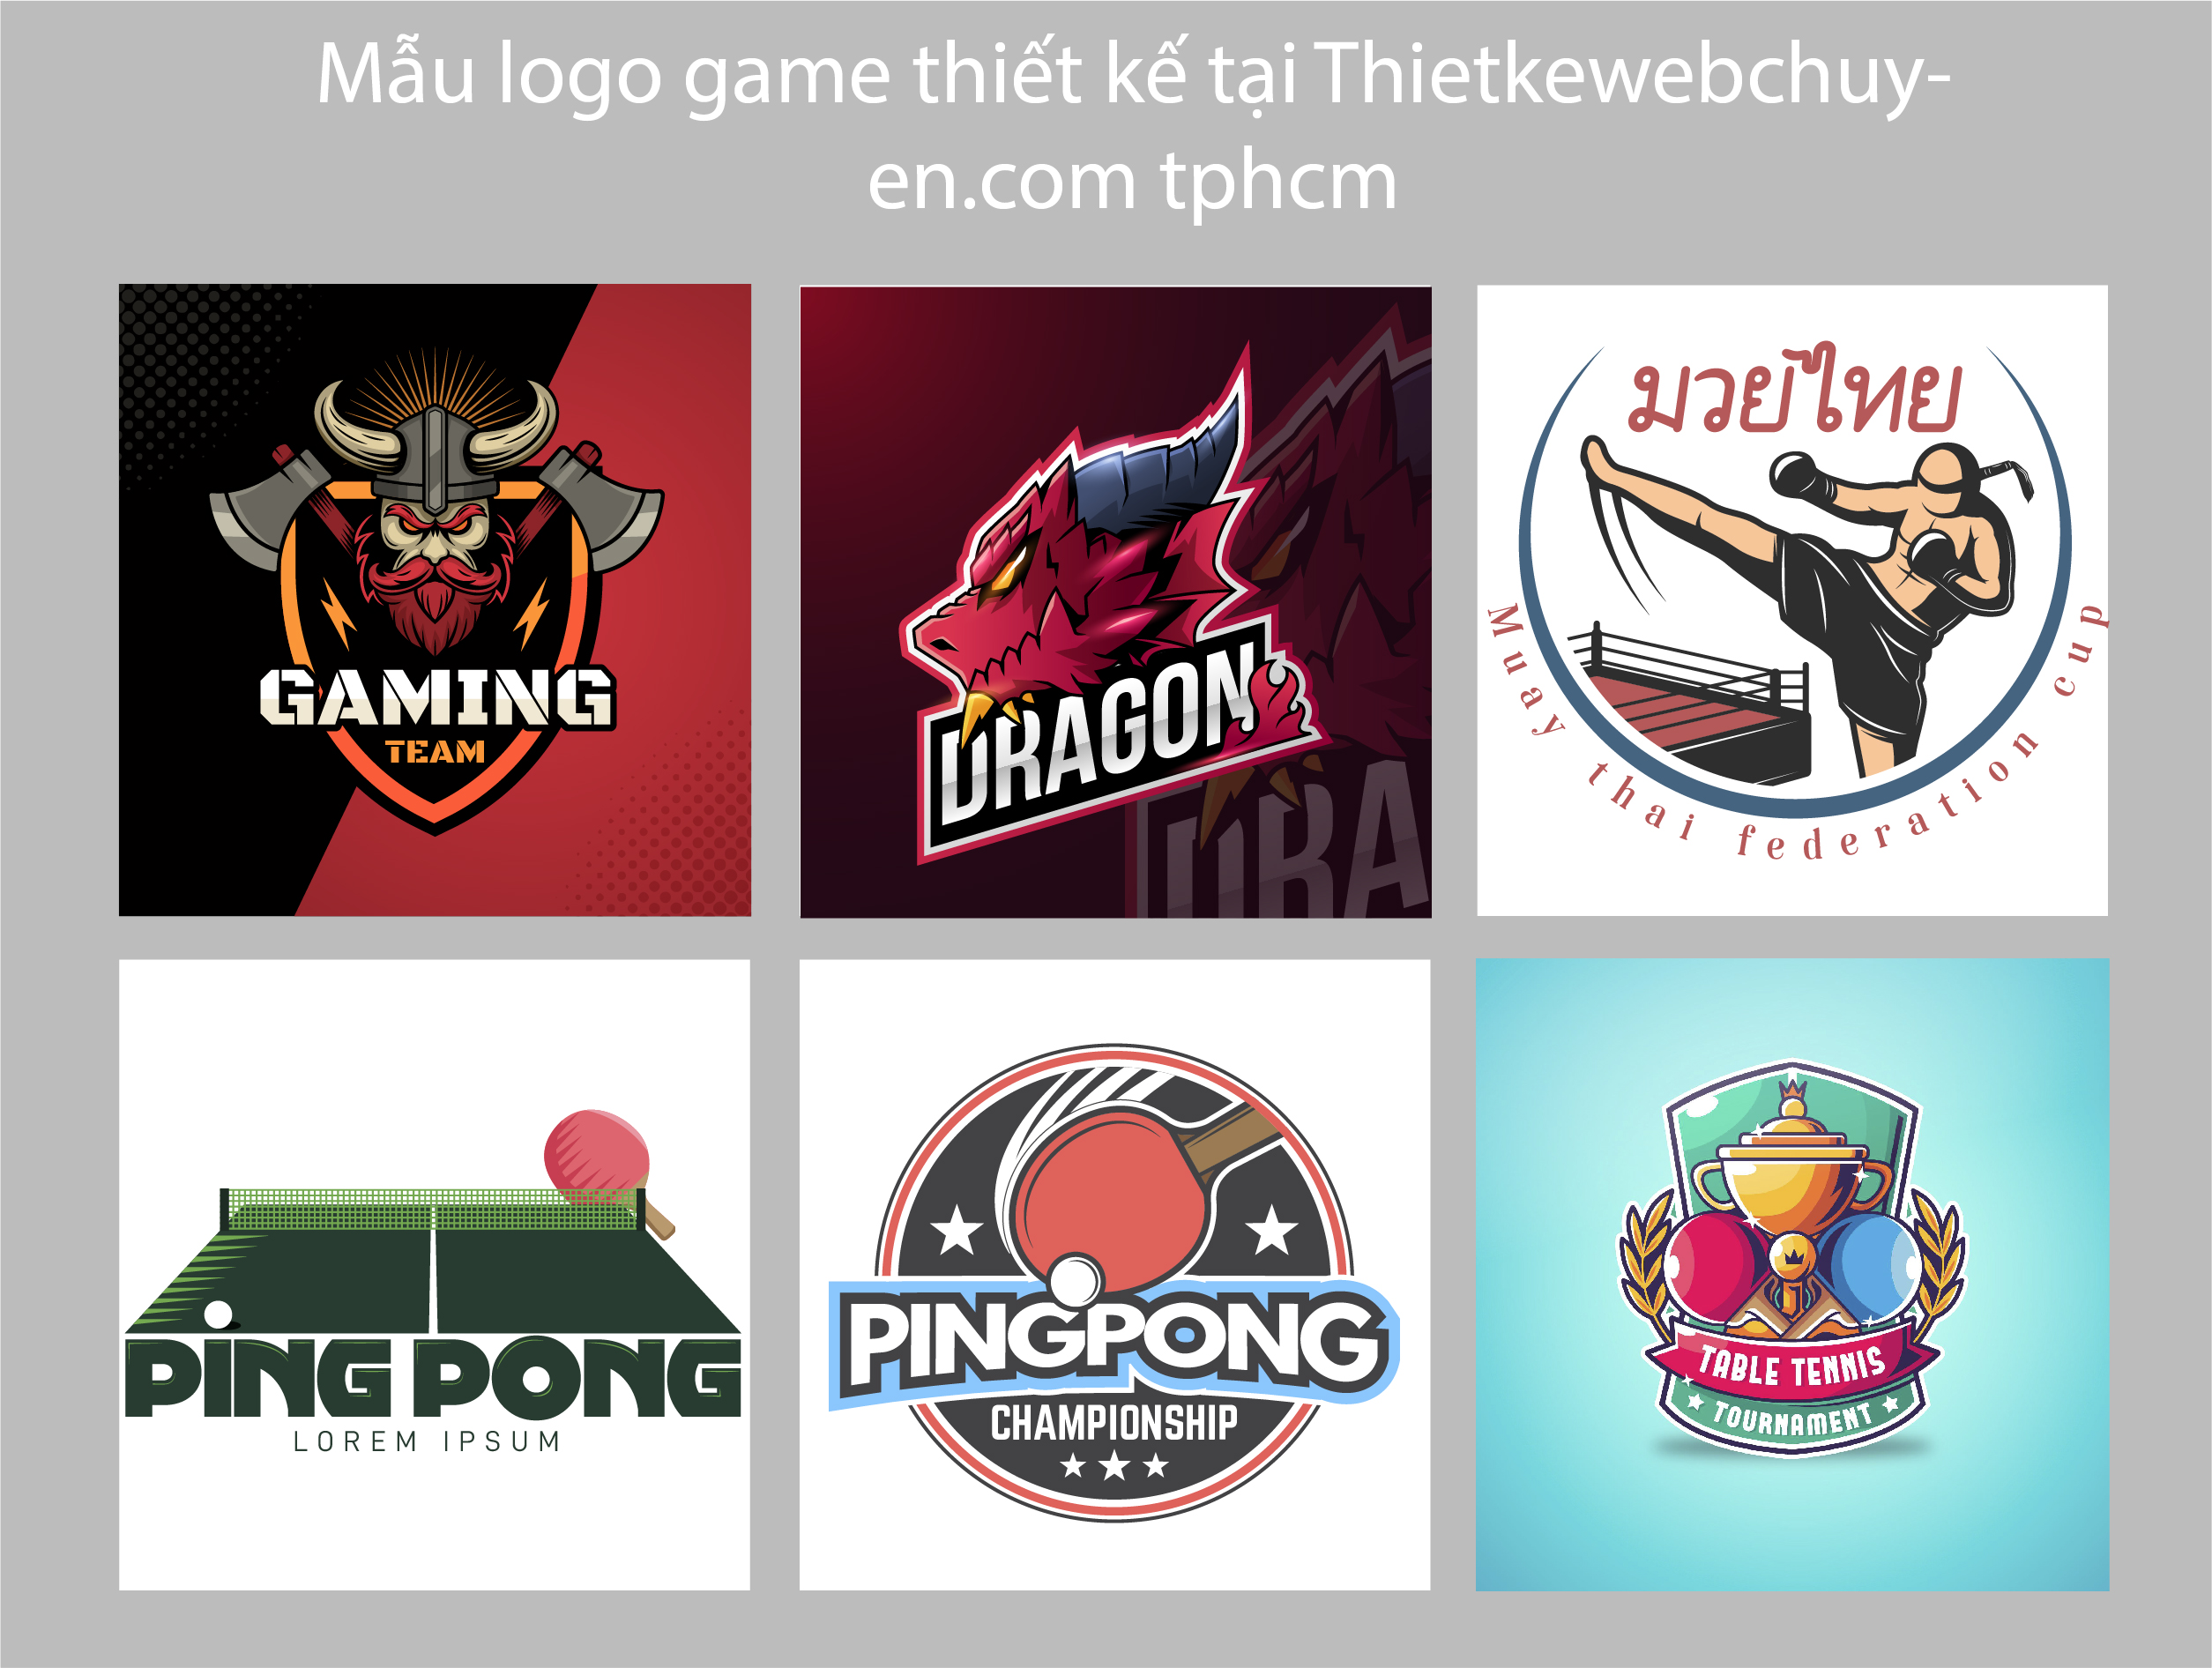 mẫu logo game thiết kế tại tphcm của thietkewebchuyen